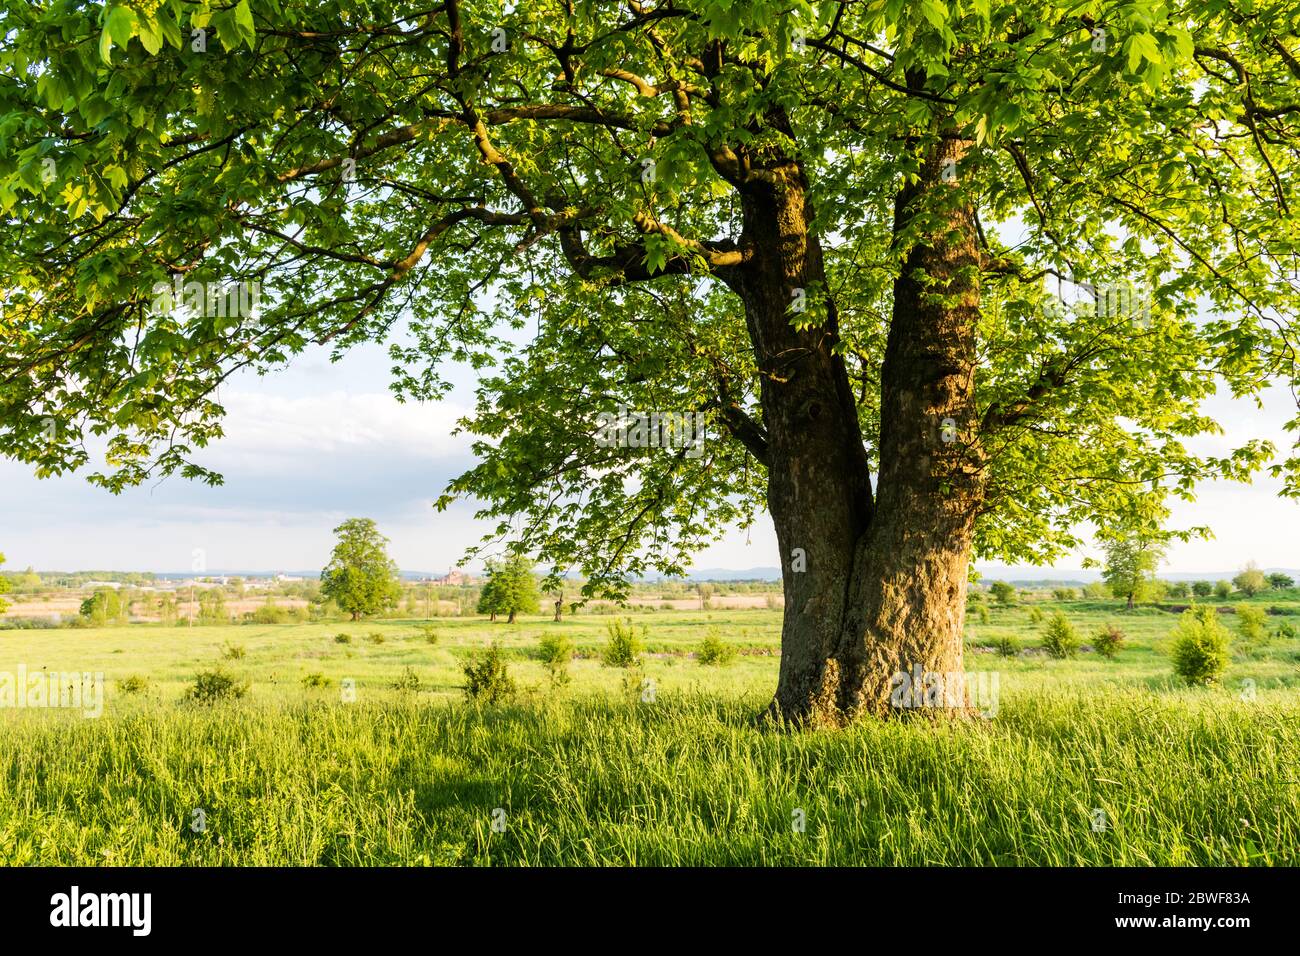 Alte Linden auf Sommerwiese. Große Baumkrone mit üppigem grünen Laub und dickem Stamm, der durch das Licht des Sonnenuntergangs leuchtet. Landschaftsfotografie Stockfoto